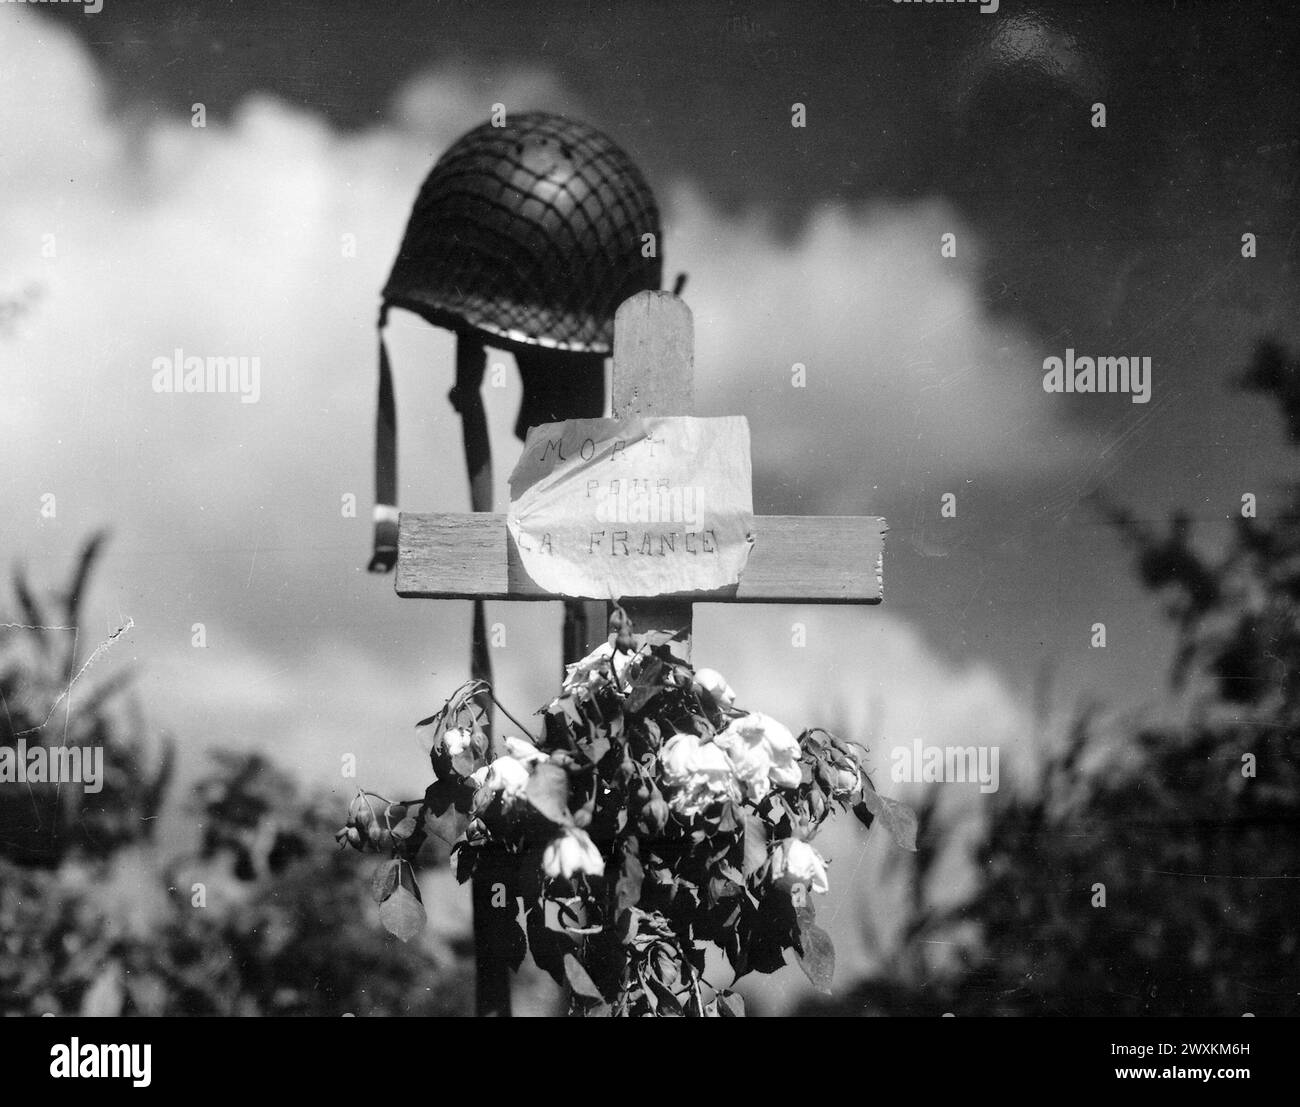 Des civils français ont érigé cet hommage silencieux à un soldat américain tombé dans la croisade pour libérer la France de la domination nazie. Carentan, France CA. 1944 Banque D'Images